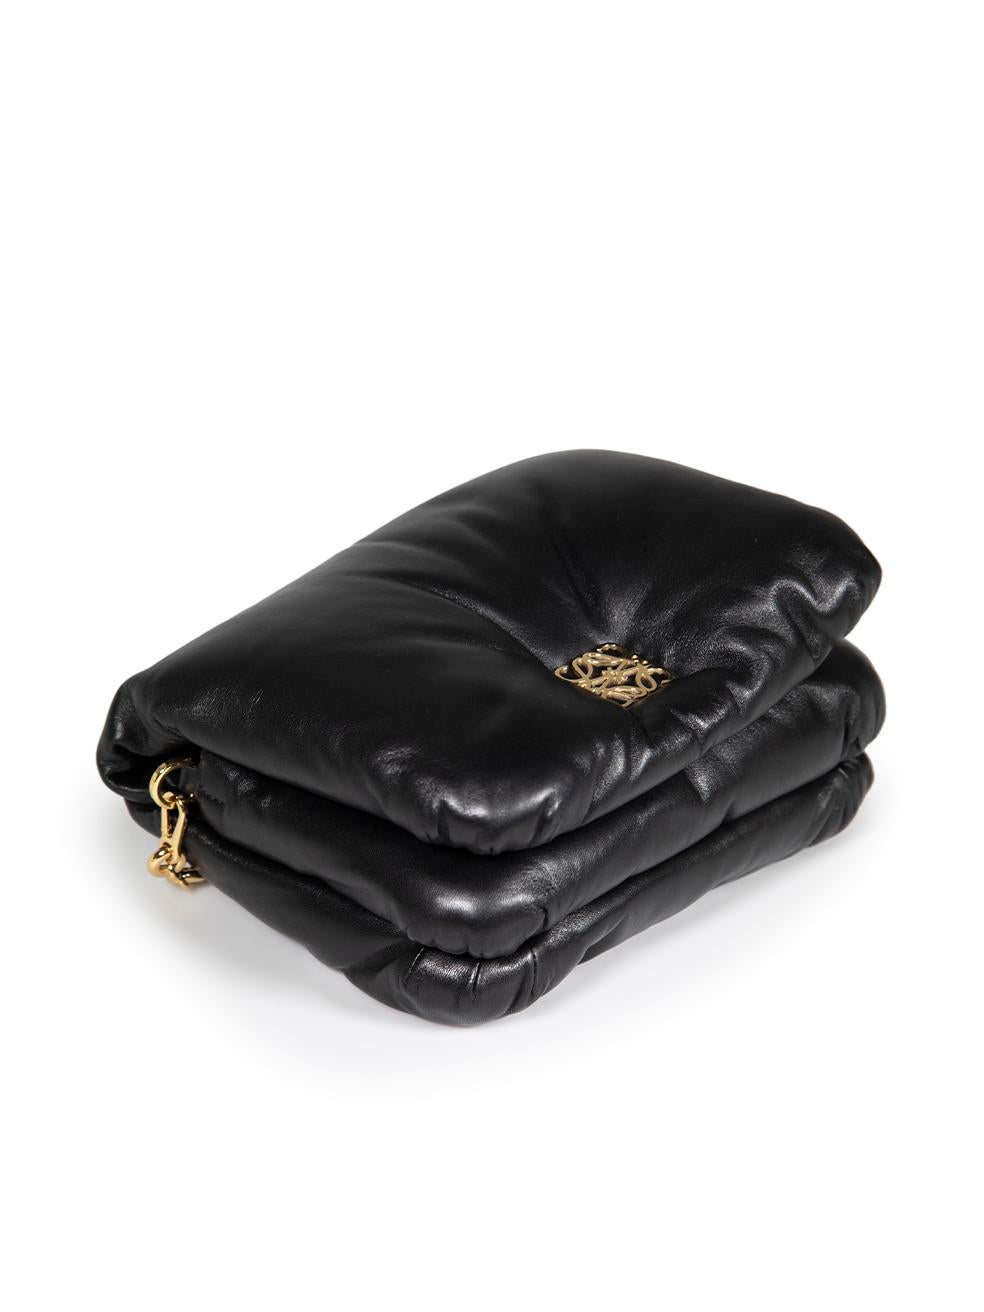 Loewe Black Nappa Leather Puffer Goya Shoulder Bag For Sale 2